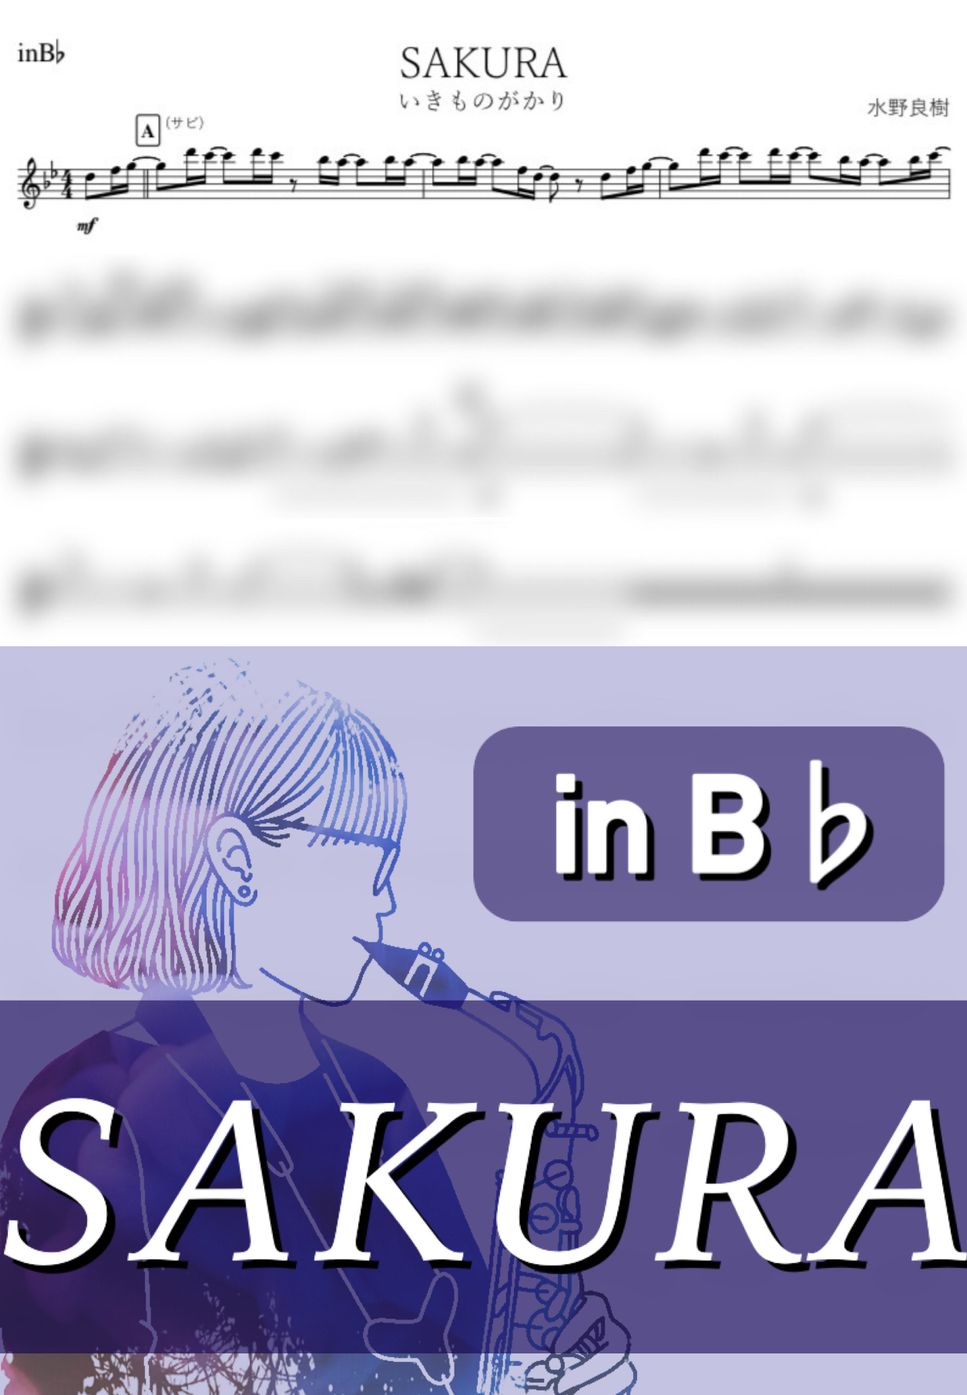 いきものがかり - SAKURA (B♭) by kanamusic